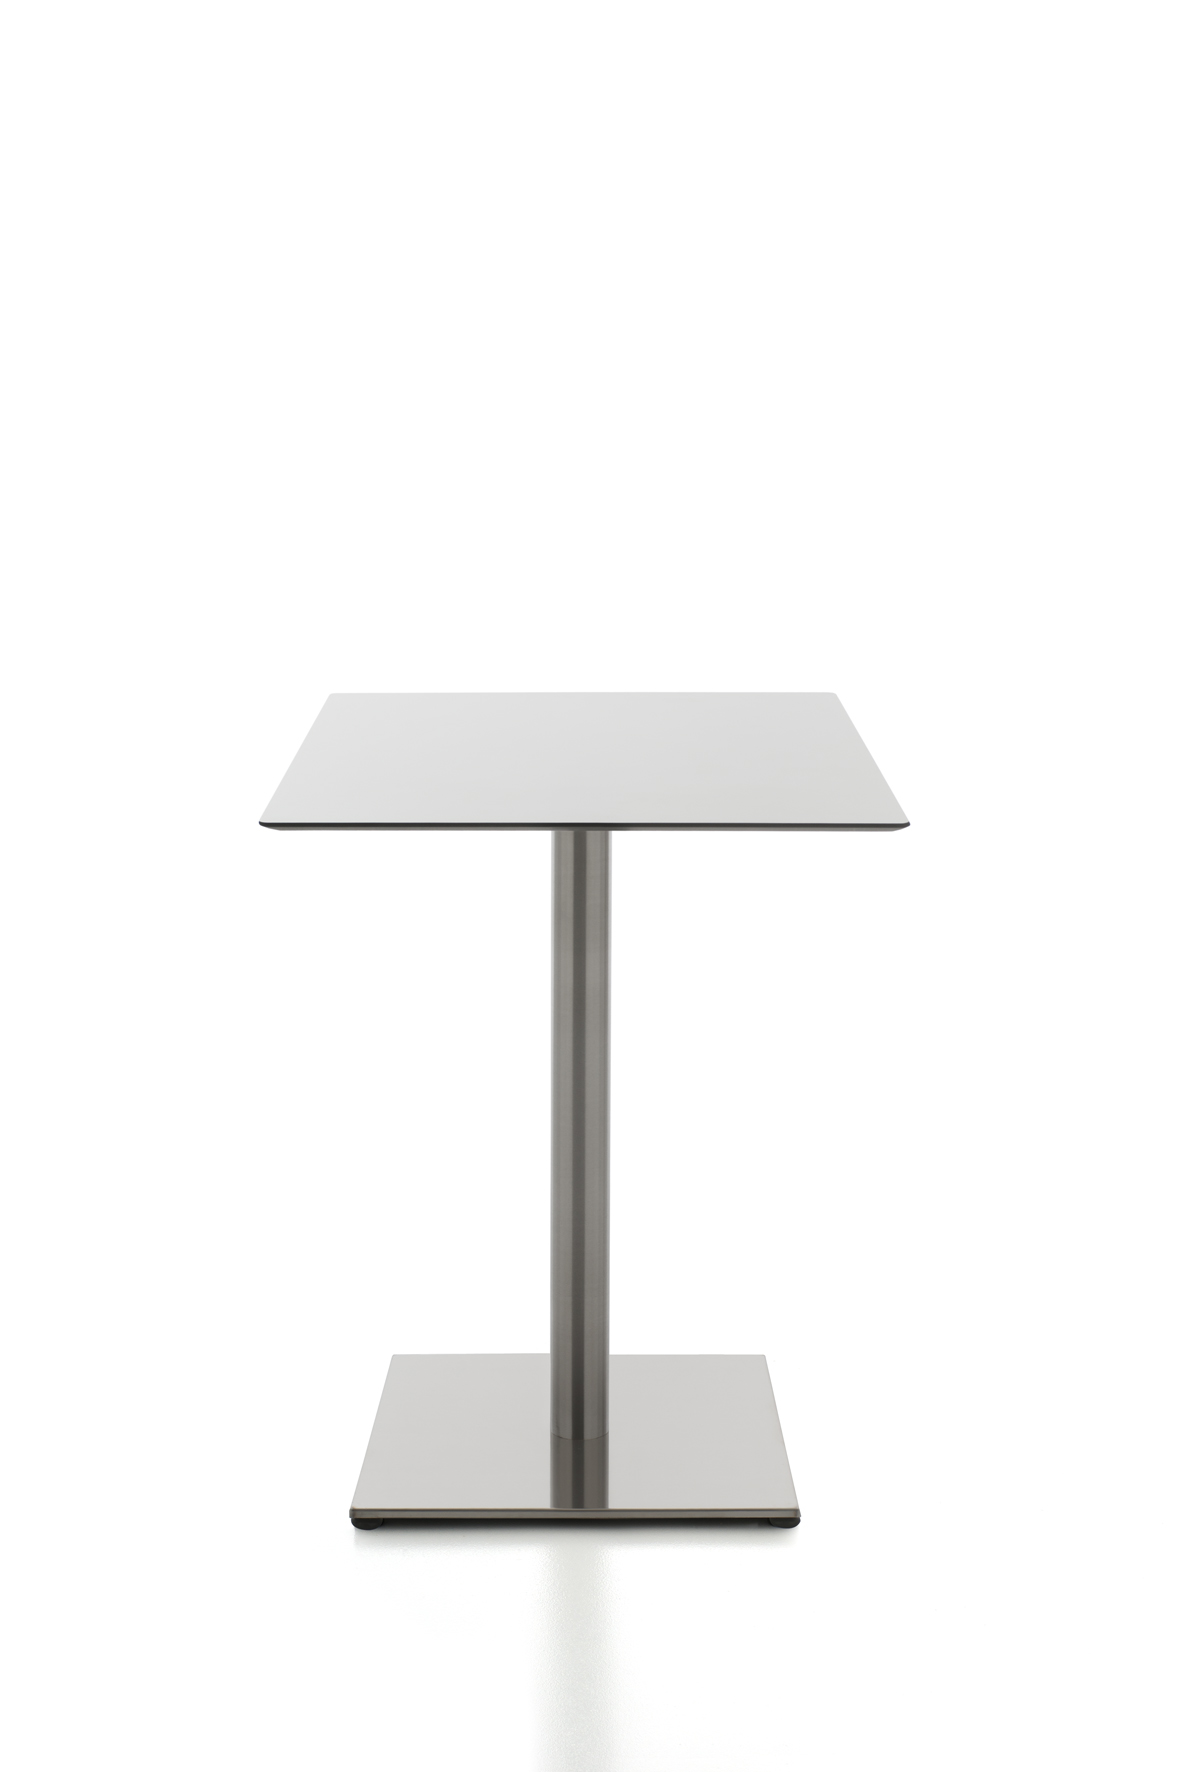 Tisch Kaleox, Basisversion; <br>quadratische Tischplatte 60 x 60 cm, wei; <br>Gestell verchromt; Tischhhe 74 cm